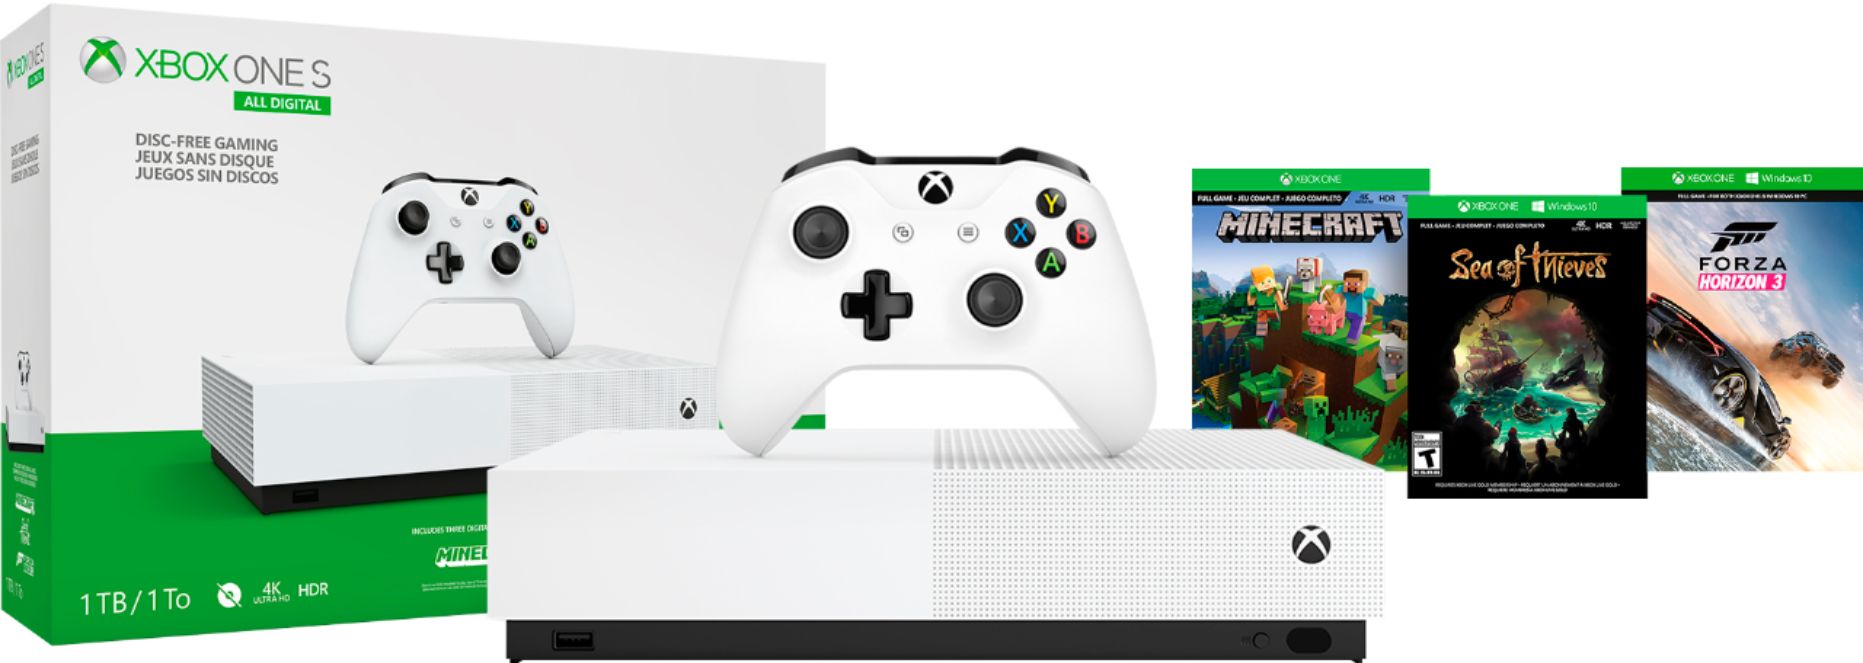 Microsoft Xbox One Console 1TB Forza Motorsport 6 Edition   GameStop